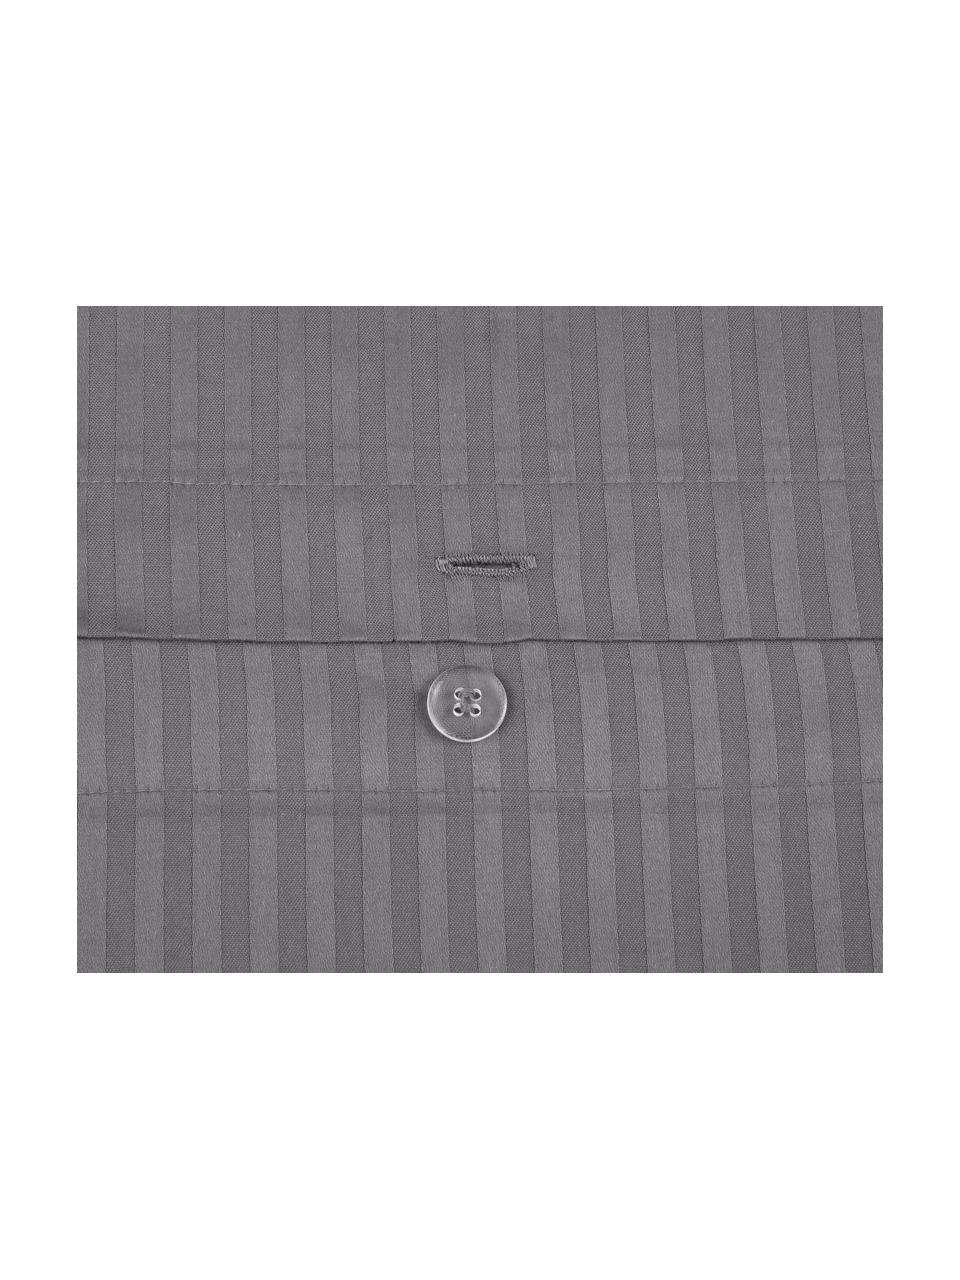 Parure copripiumino in raso di cotone Stella, Tessuto: raso Densità del filo 250, Grigio scuro, 255 x 200 cm, 3 pz.